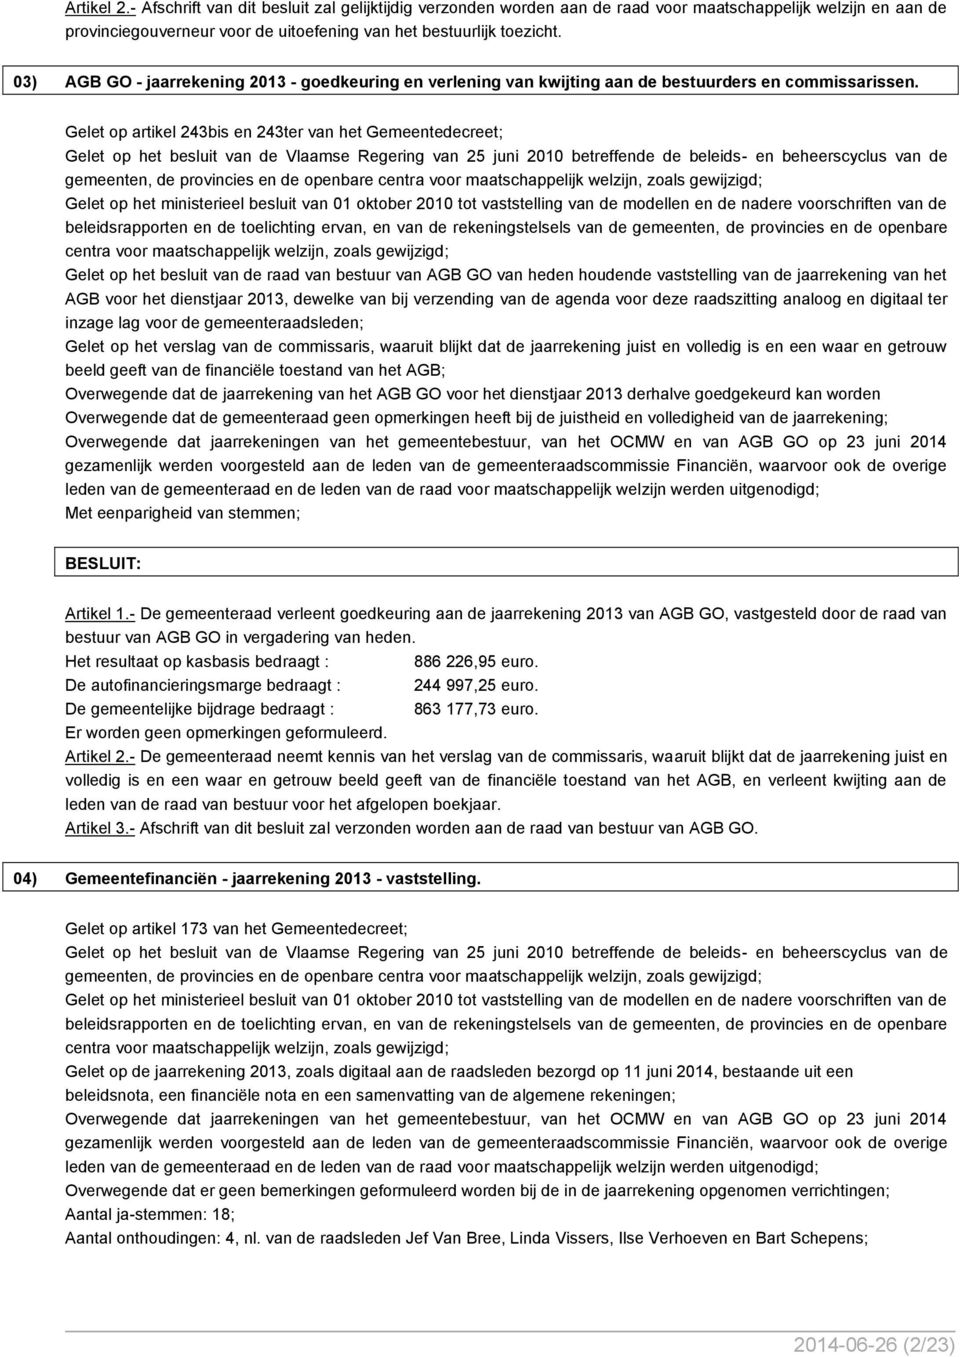 Gelet op artikel 243bis en 243ter van het Gemeentedecreet; Gelet op het besluit van de Vlaamse Regering van 25 juni 2010 betreffende de beleids- en beheerscyclus van de gemeenten, de provincies en de